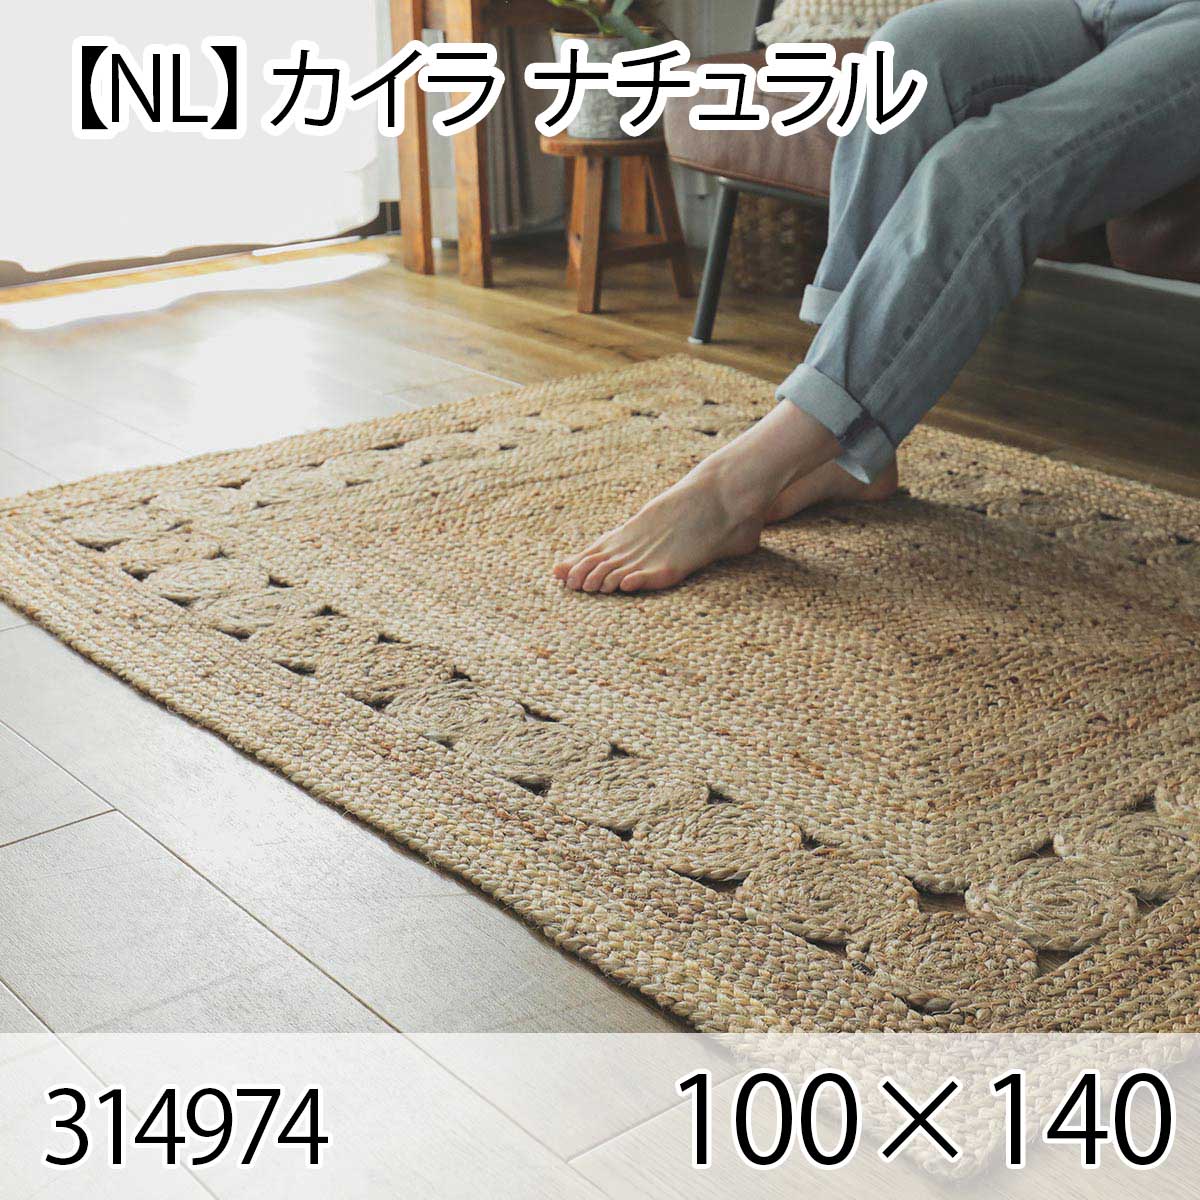 【NL】カイラ 100cm×140cm ナチュラル